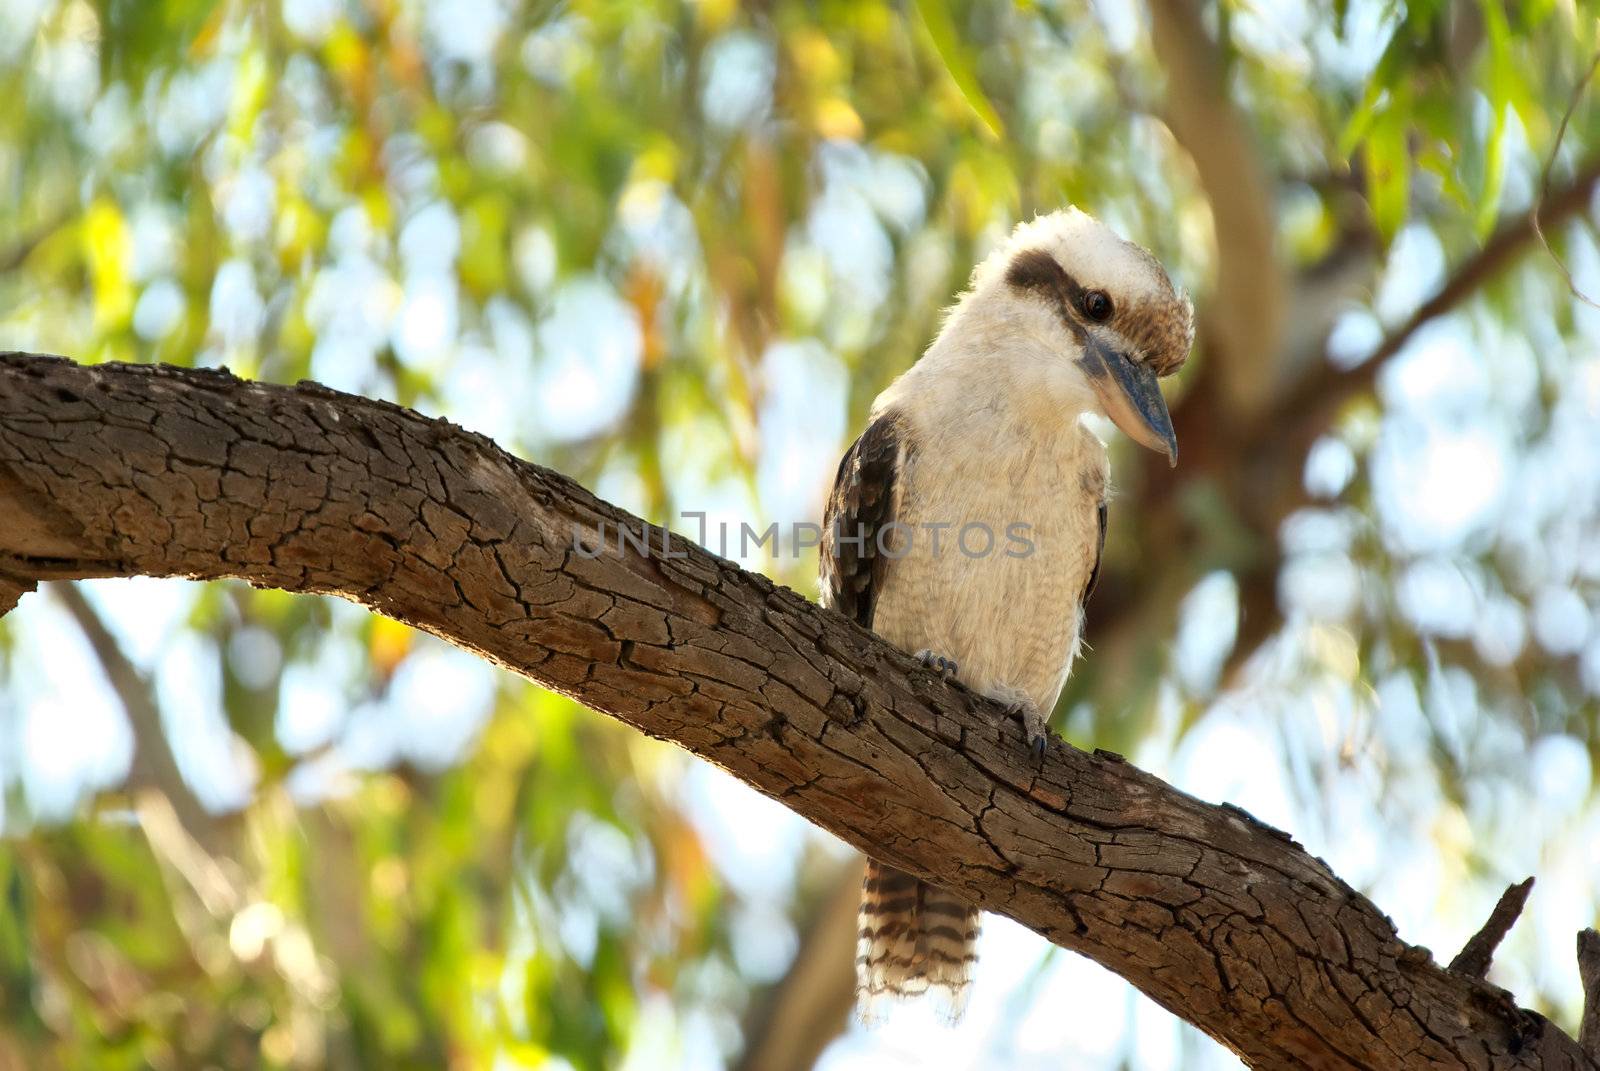 kookaburra in tree by clearviewstock